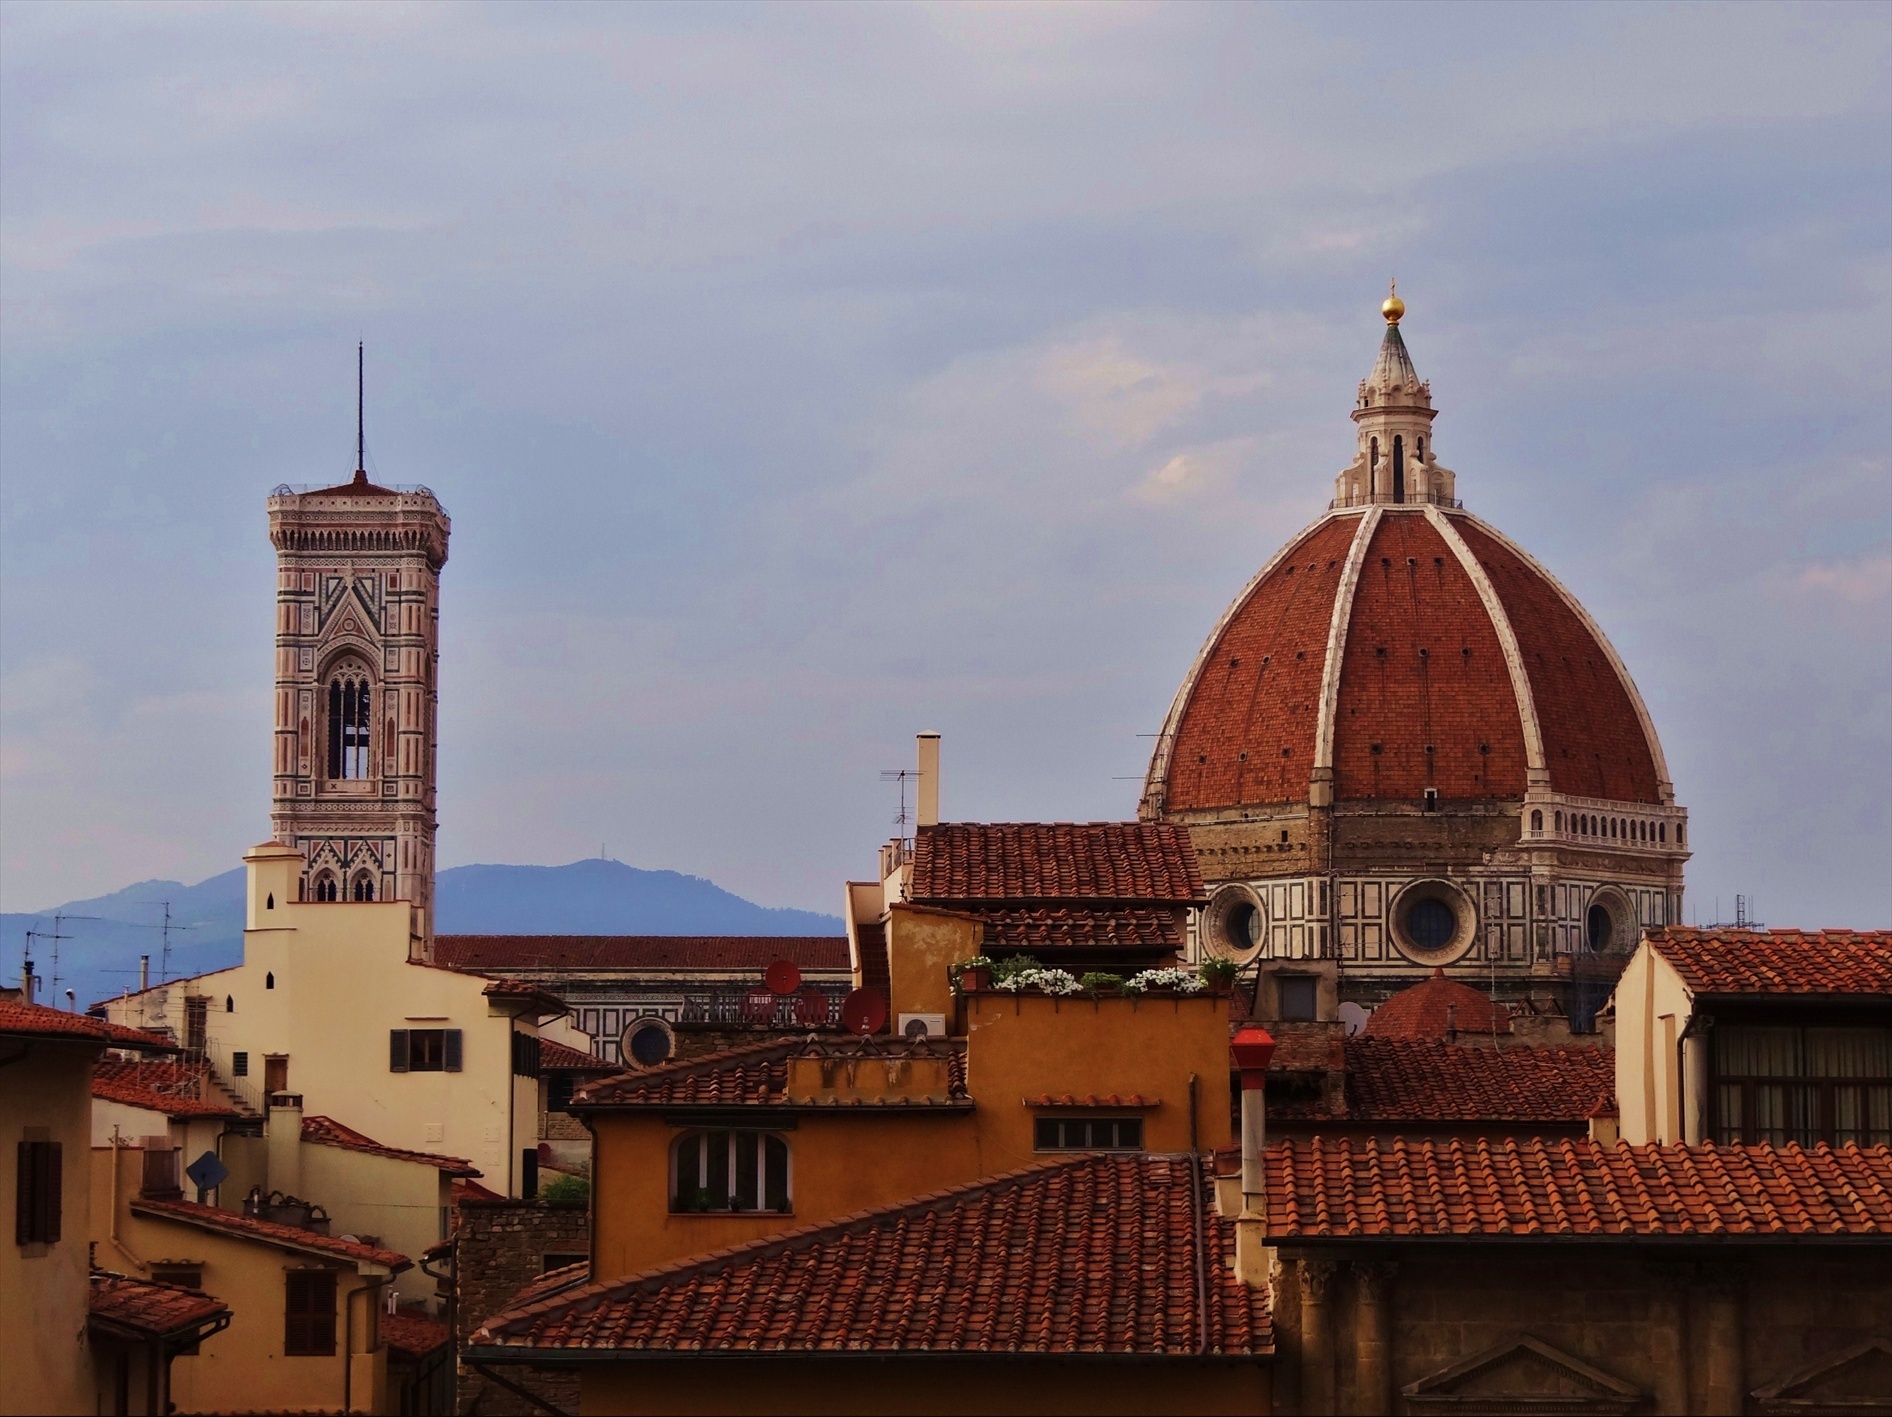 Foto: Palazzo Vecchio - Firenze (Tuscany), Italia